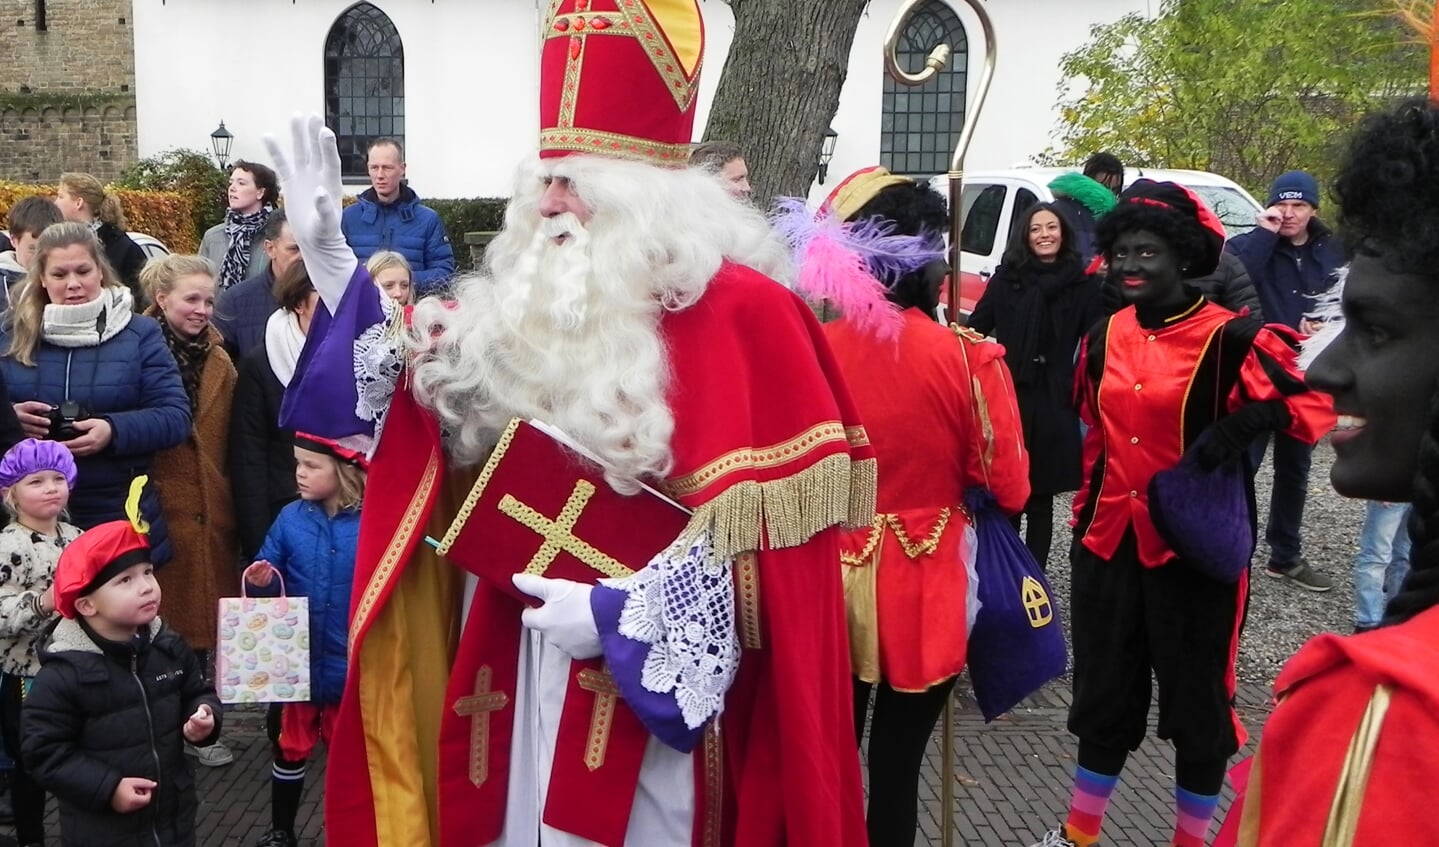 Vol ontzag keken de kinderen naar Sinterklaas.